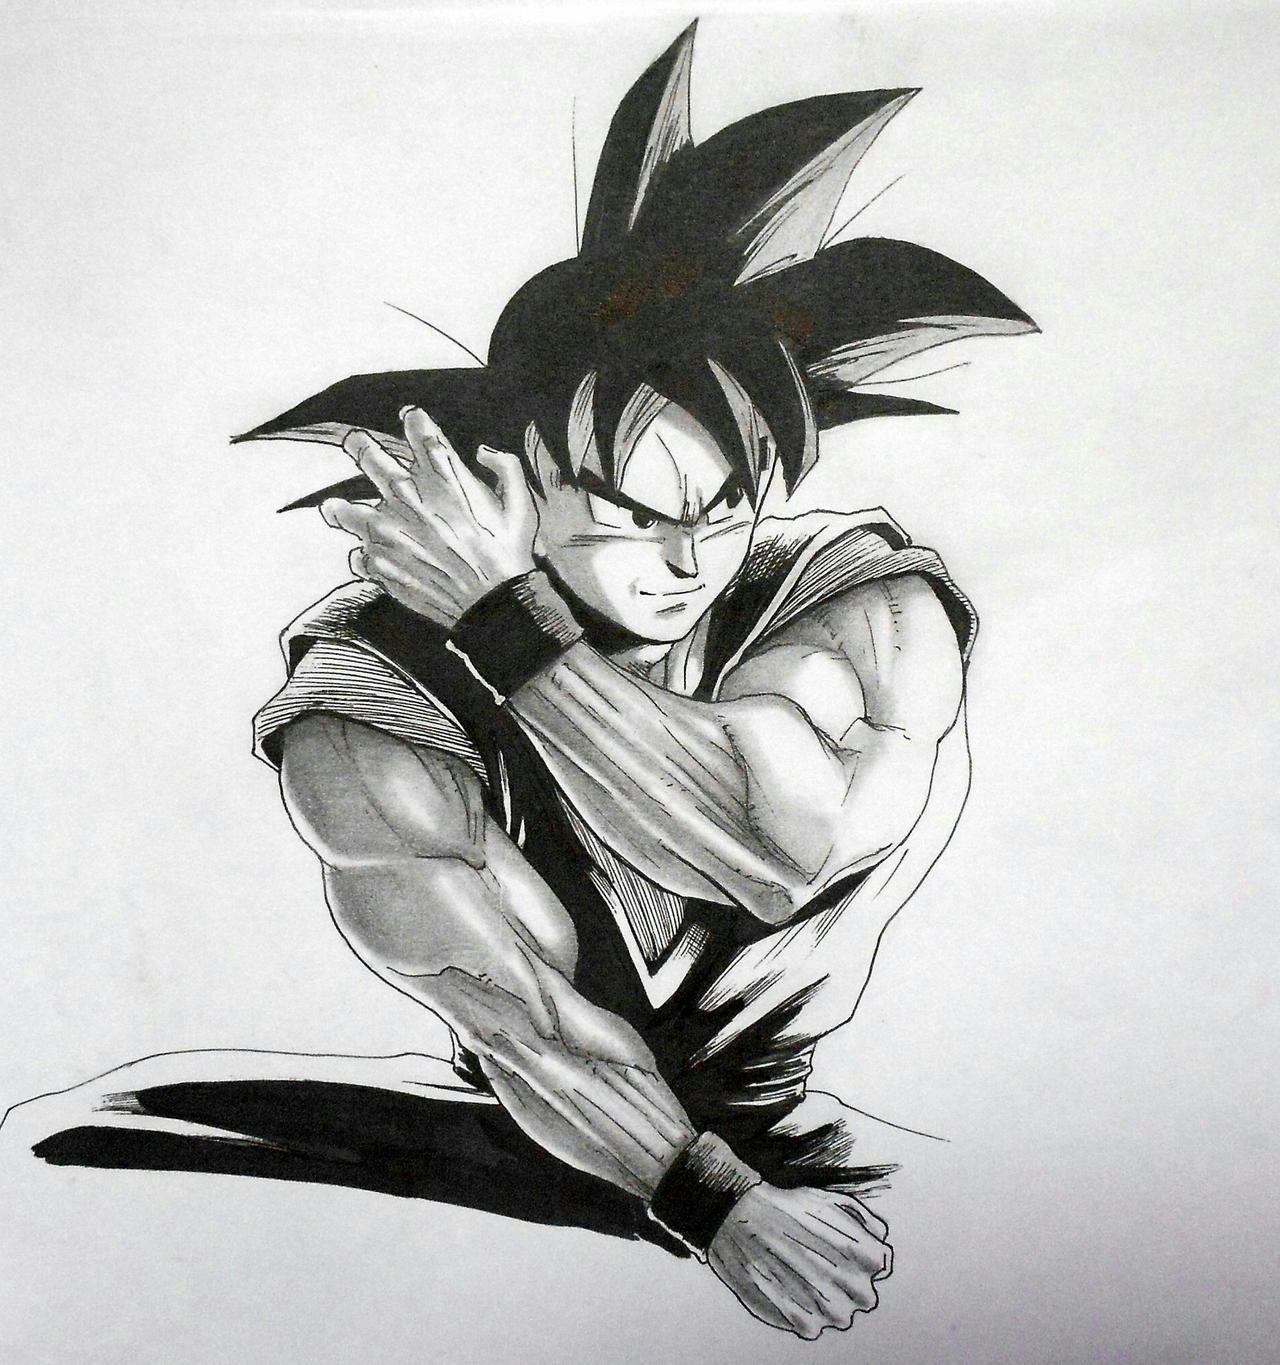 Son Goku sketch by DarkosimpleART on DeviantArt